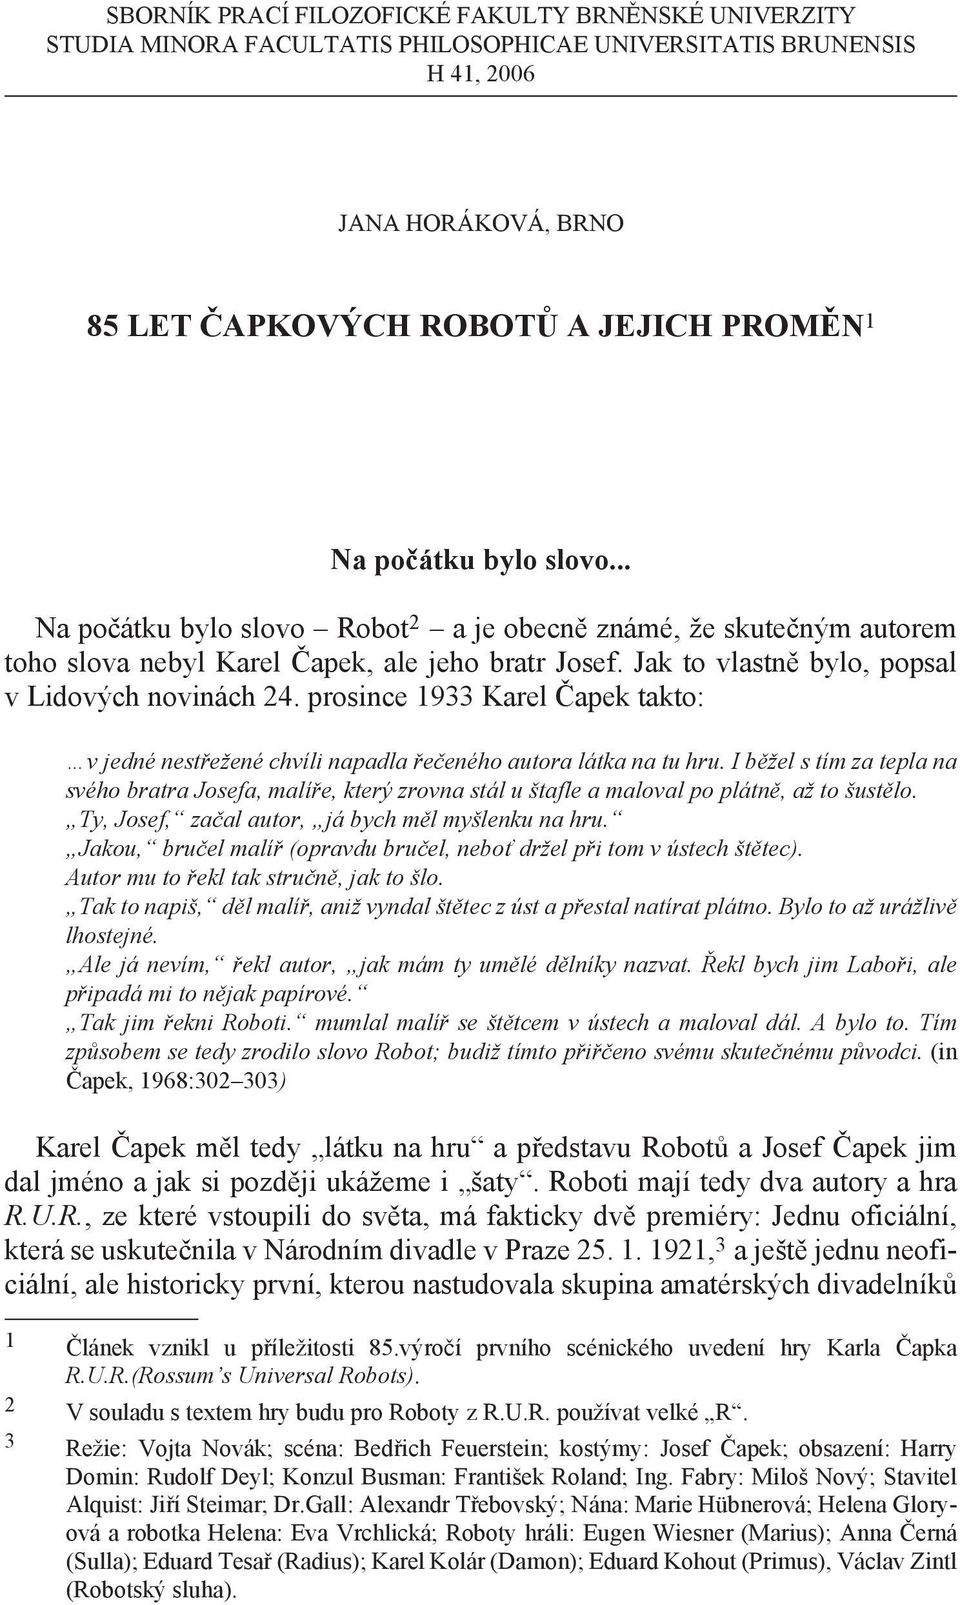 85 let Čapkových Robotů a jejich proměn 1 - PDF Free Download